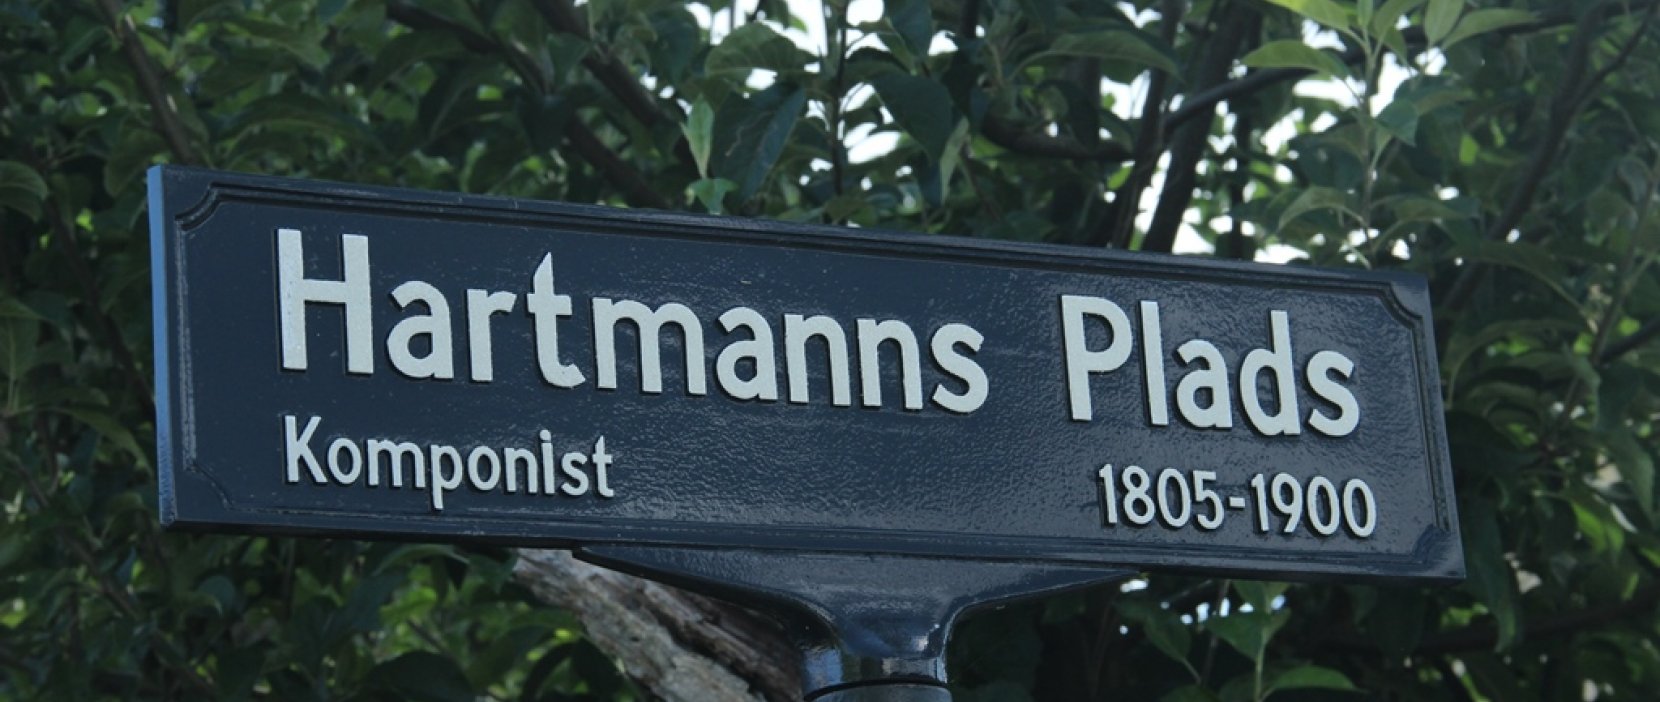 skilt med Hartmanns Plads